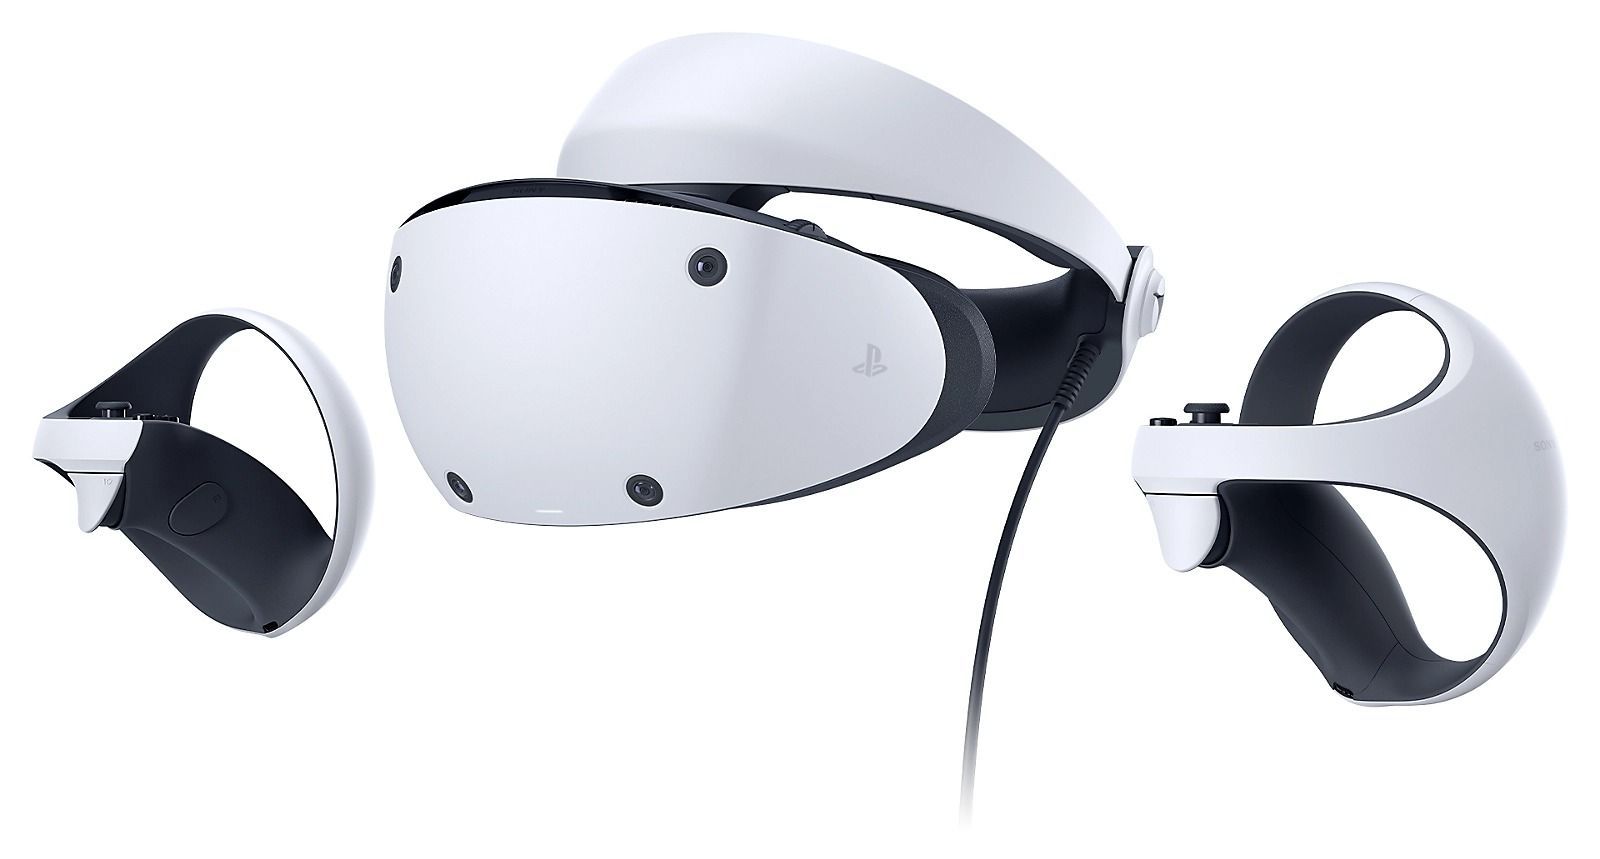 Quand sortira le nouveau casque de réalité virtuelle PSVR 2 de Sony?